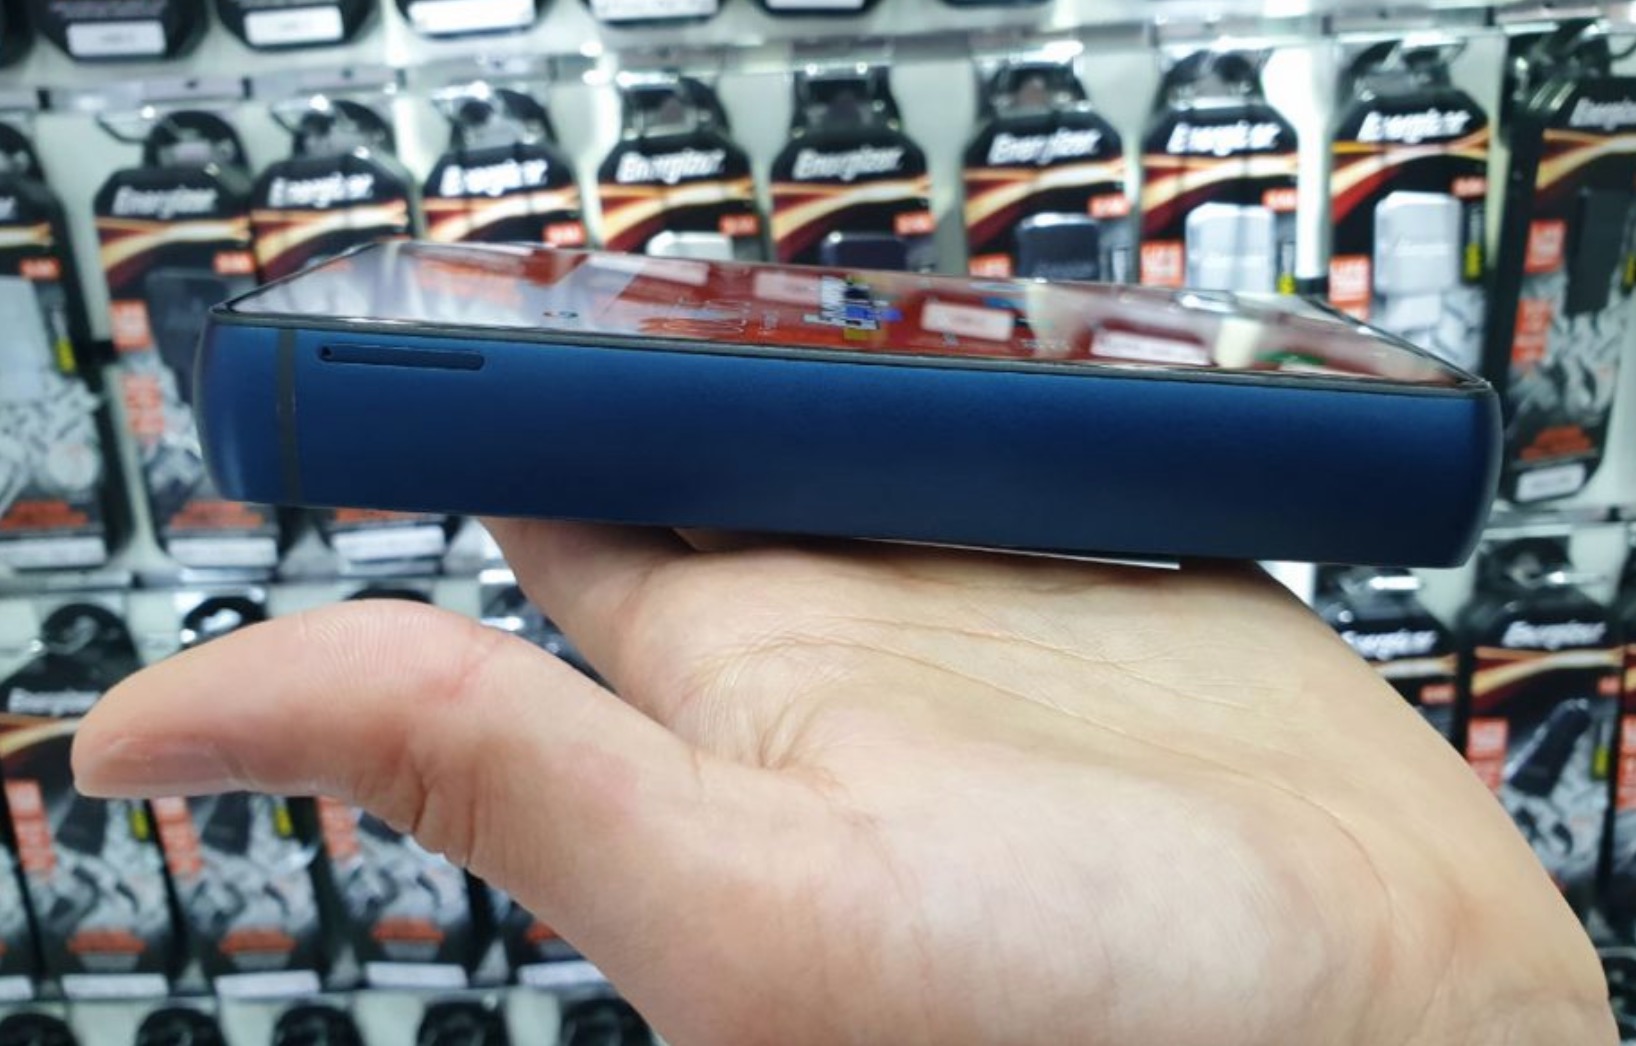 [MWC 2019] Energizer trình làng Power Max 18K
Pop: Smartphone pin siêu khủng 18000 mAh, dày gần 2cm, sạc 9
tiếng đầy, giá 16 triệu